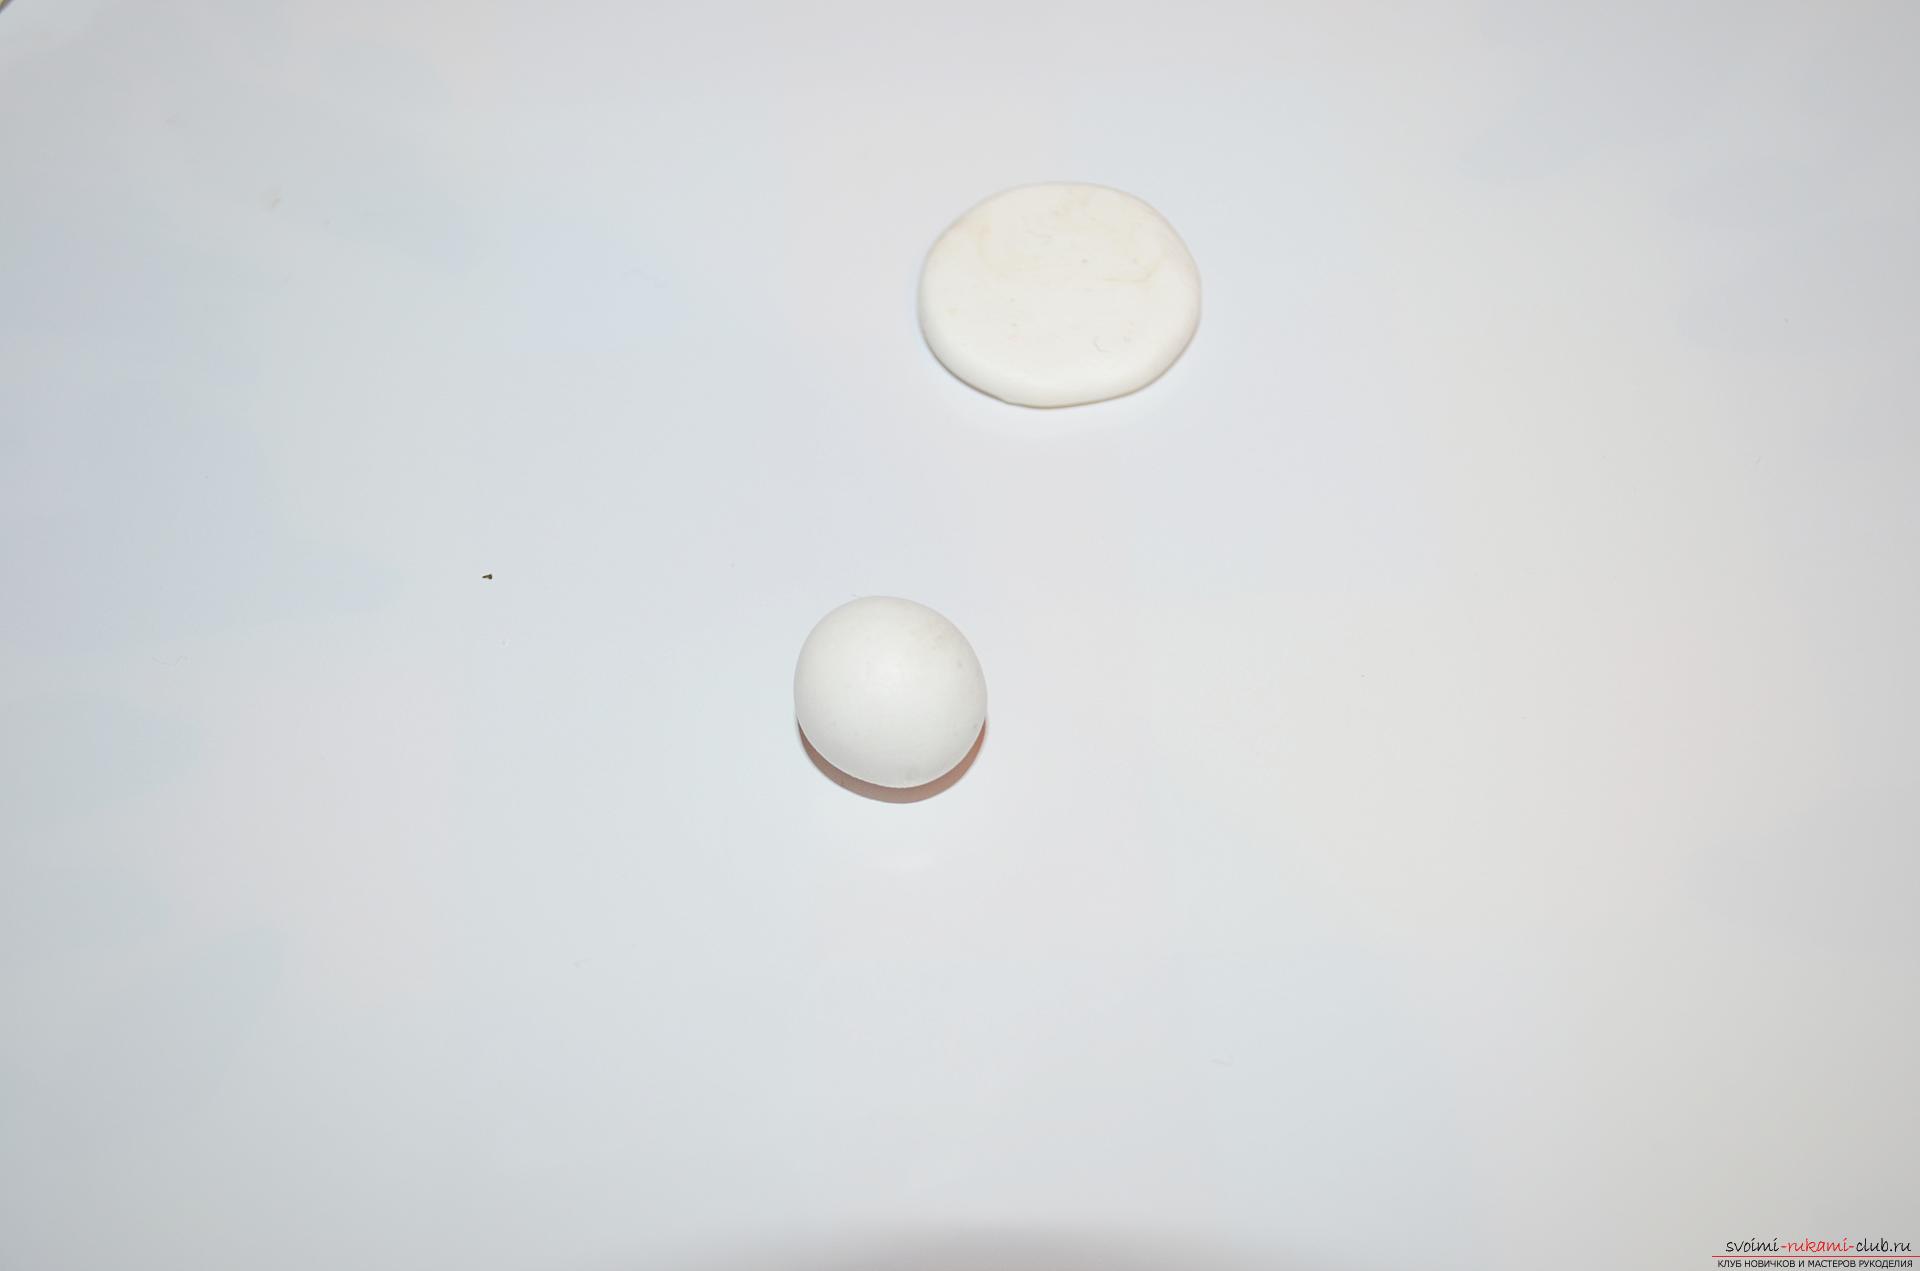 Фото к уроку по лепки из полимерной глины елочной игрушки - снечговика. Фото №3